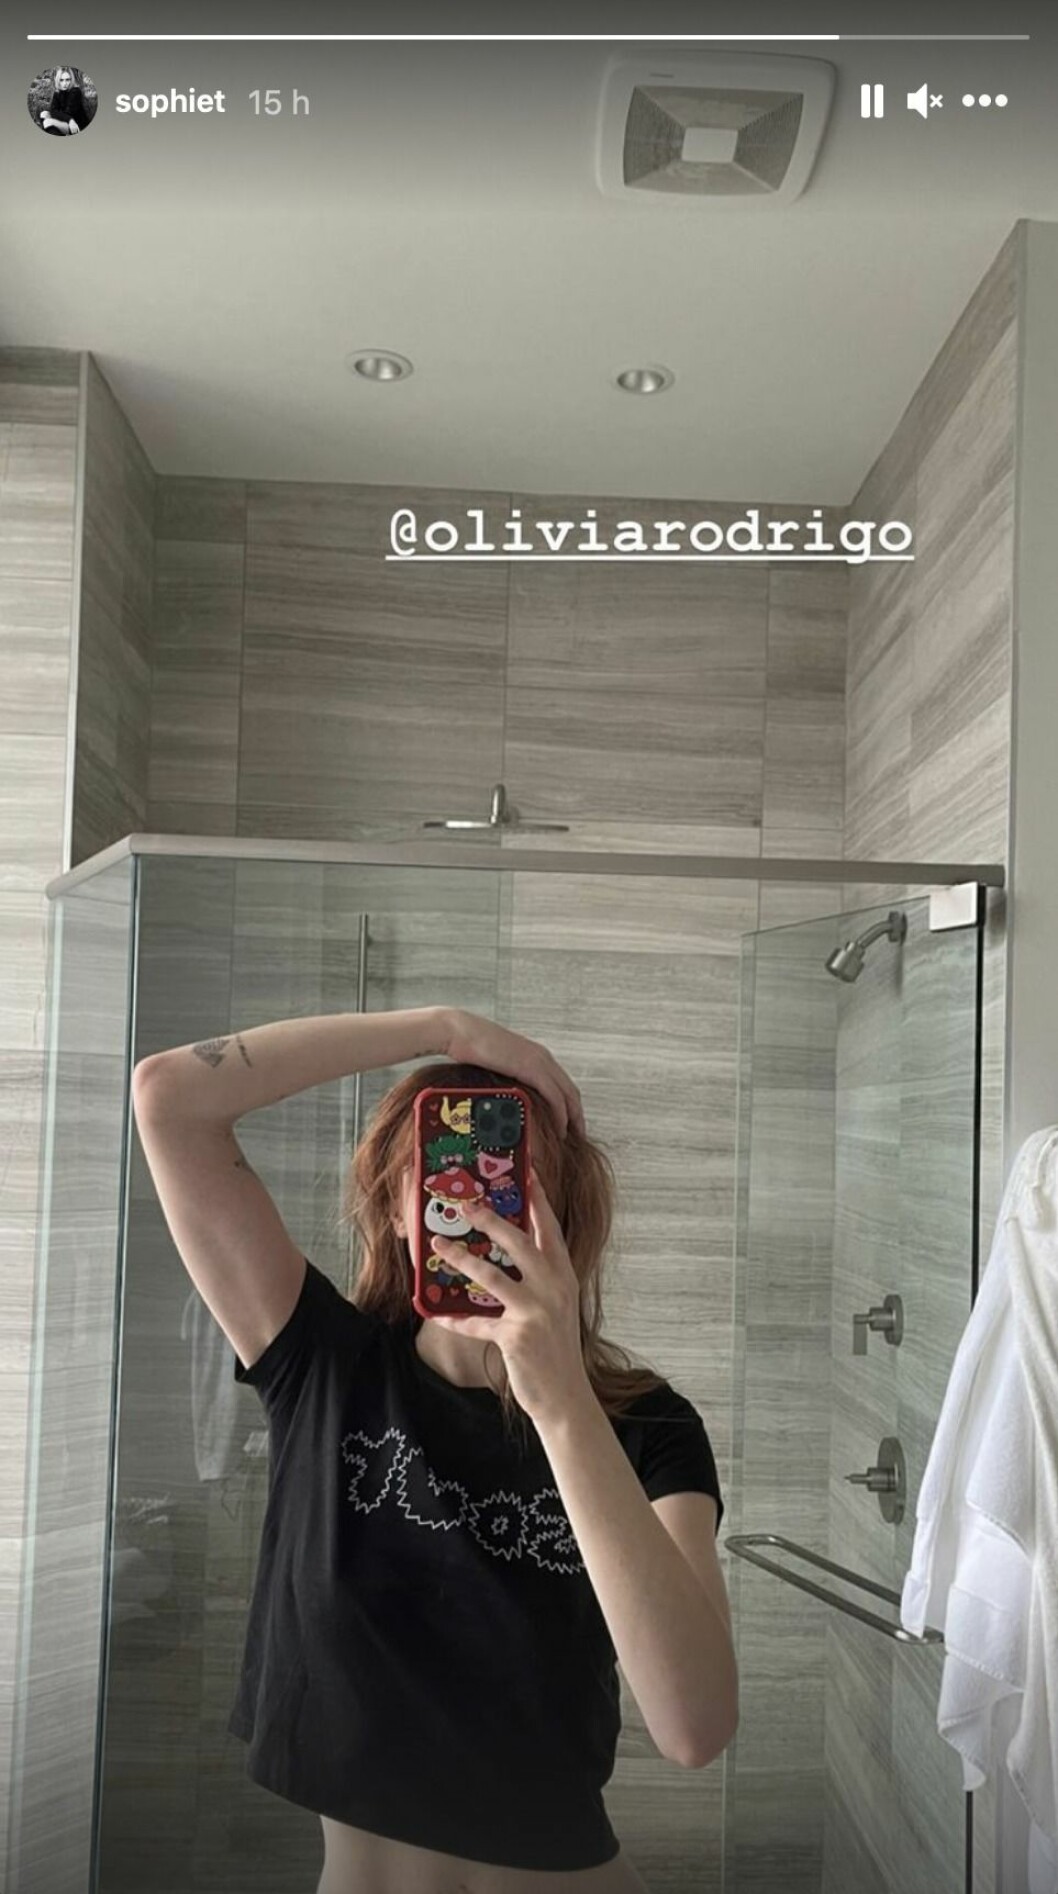 sophie turner rödhårig spegelselfie